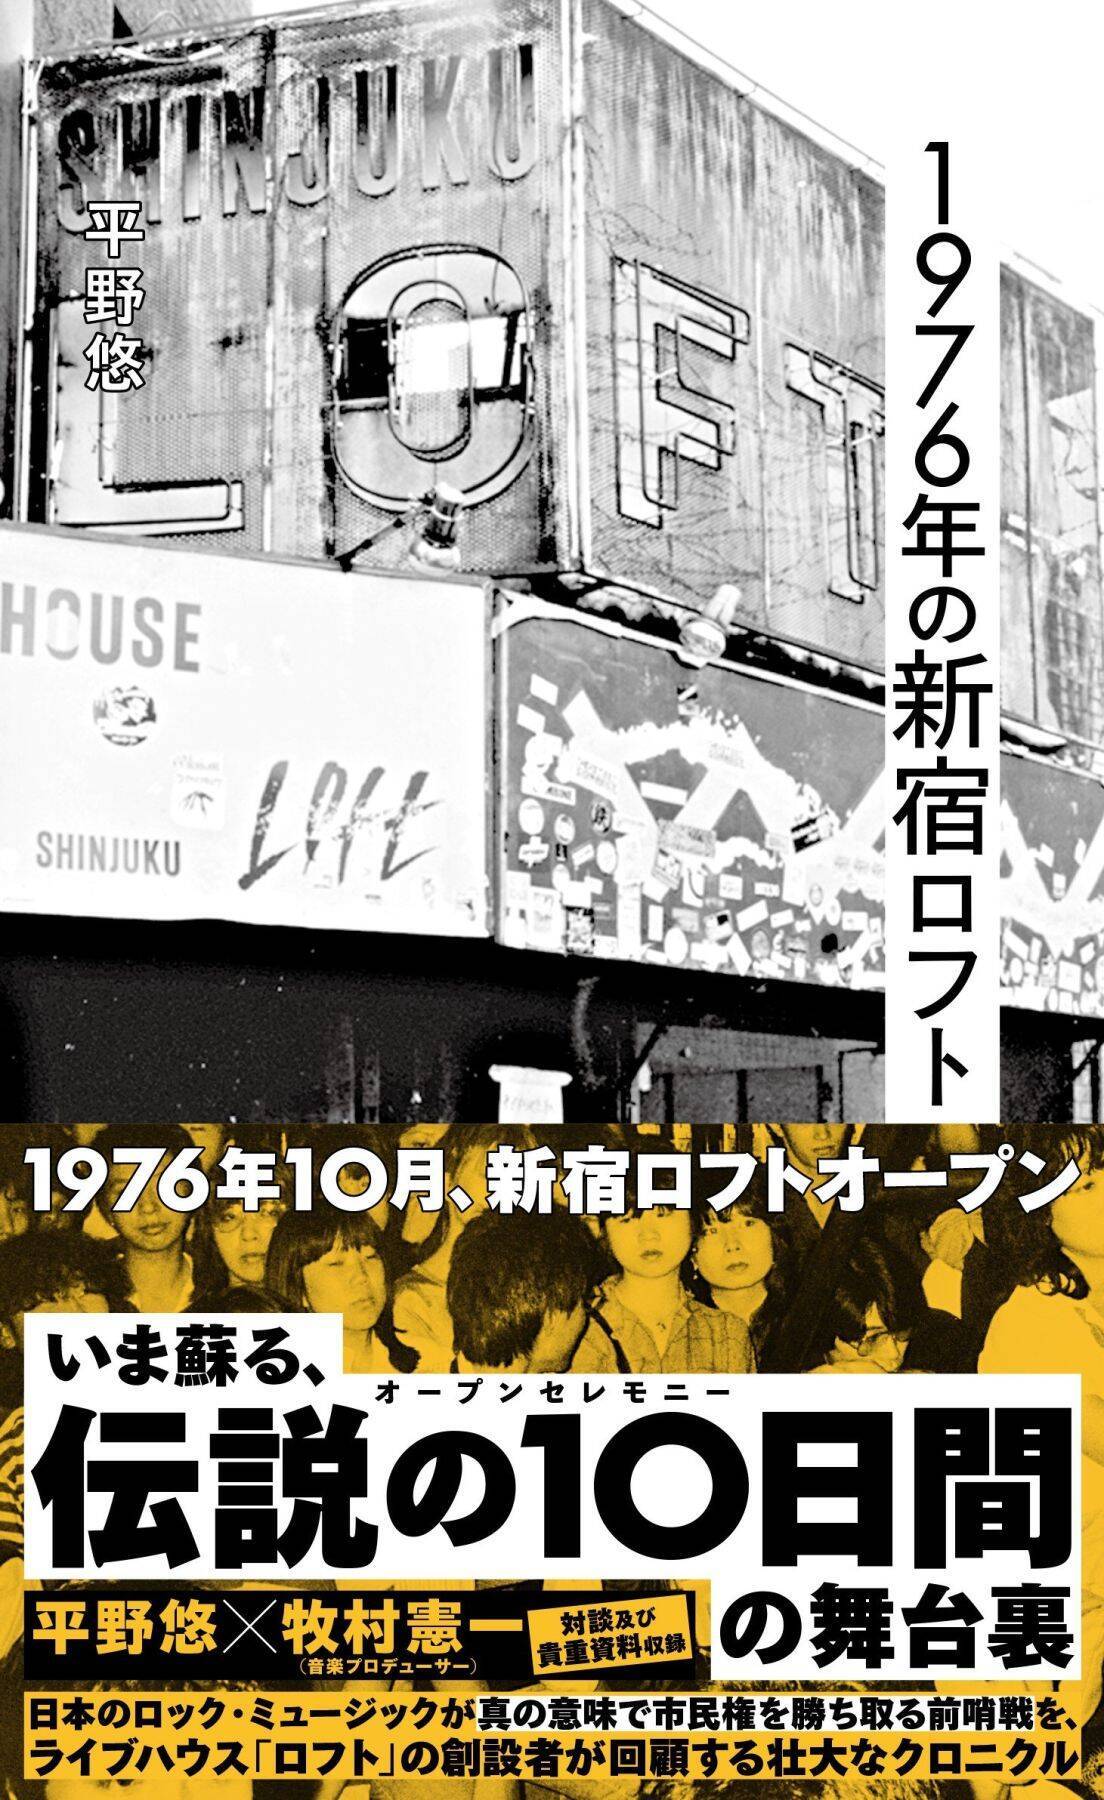 1976年、日本ロック史に残る“伝説の10日間”の内幕「サザンだってジーパンも汚いし、オシャレなんていうのとはほど遠かった」新宿ロフト創設者が証言